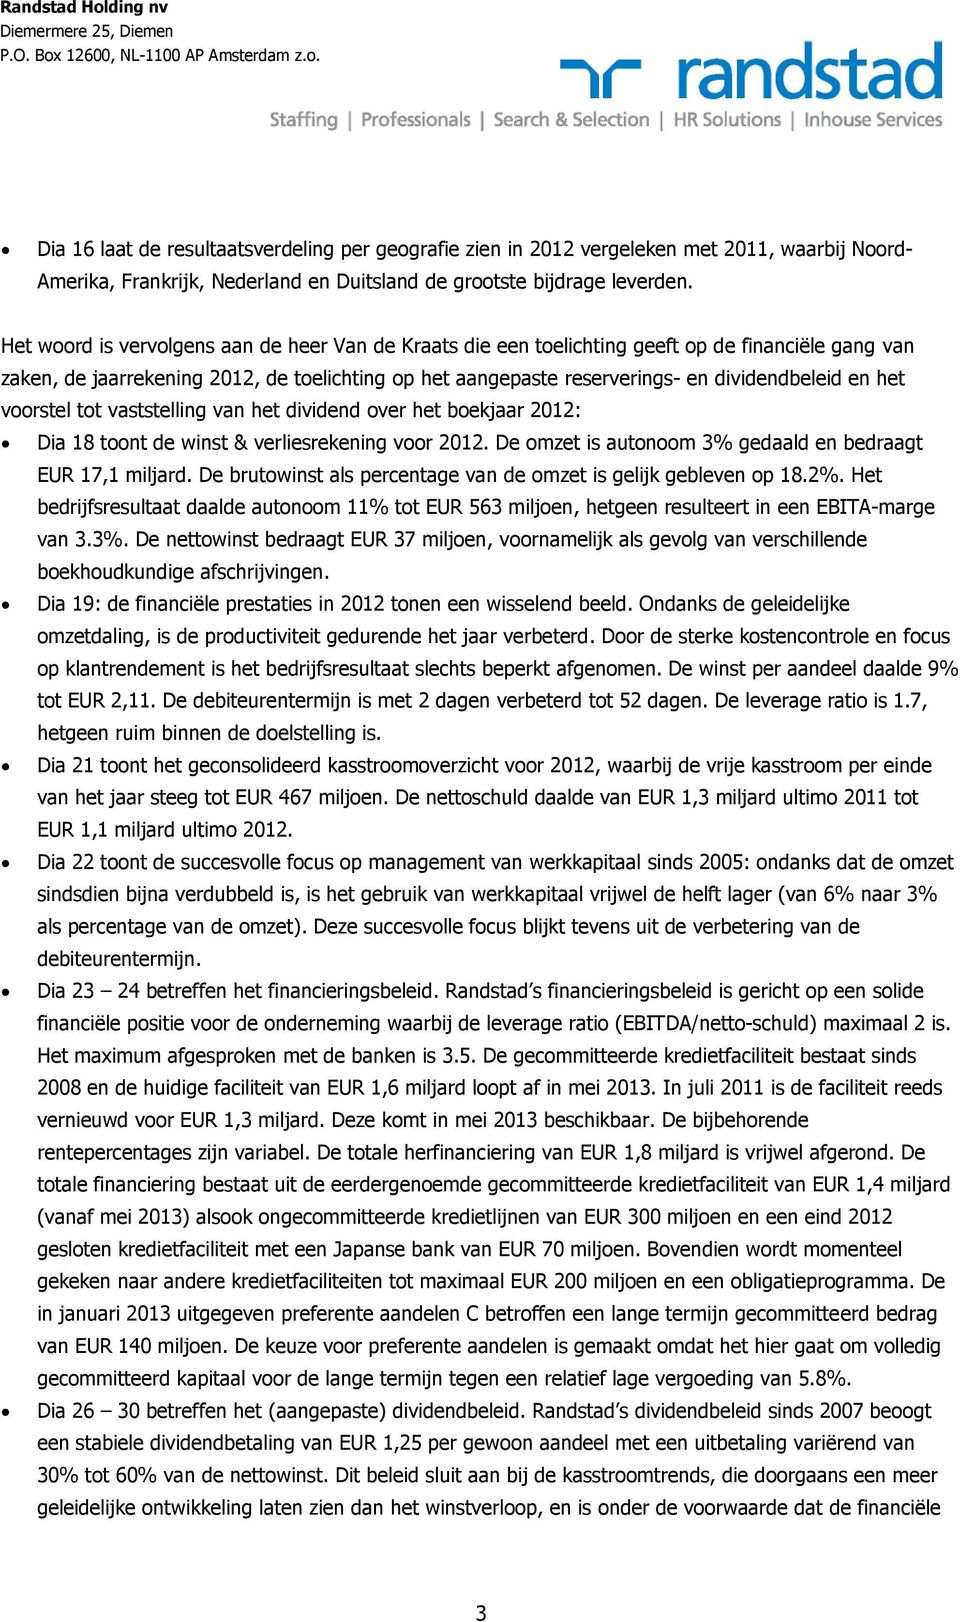 het voorstel tot vaststelling van het dividend over het boekjaar 2012: Dia 18 toont de winst & verliesrekening voor 2012. De omzet is autonoom 3% gedaald en bedraagt EUR 17,1 miljard.